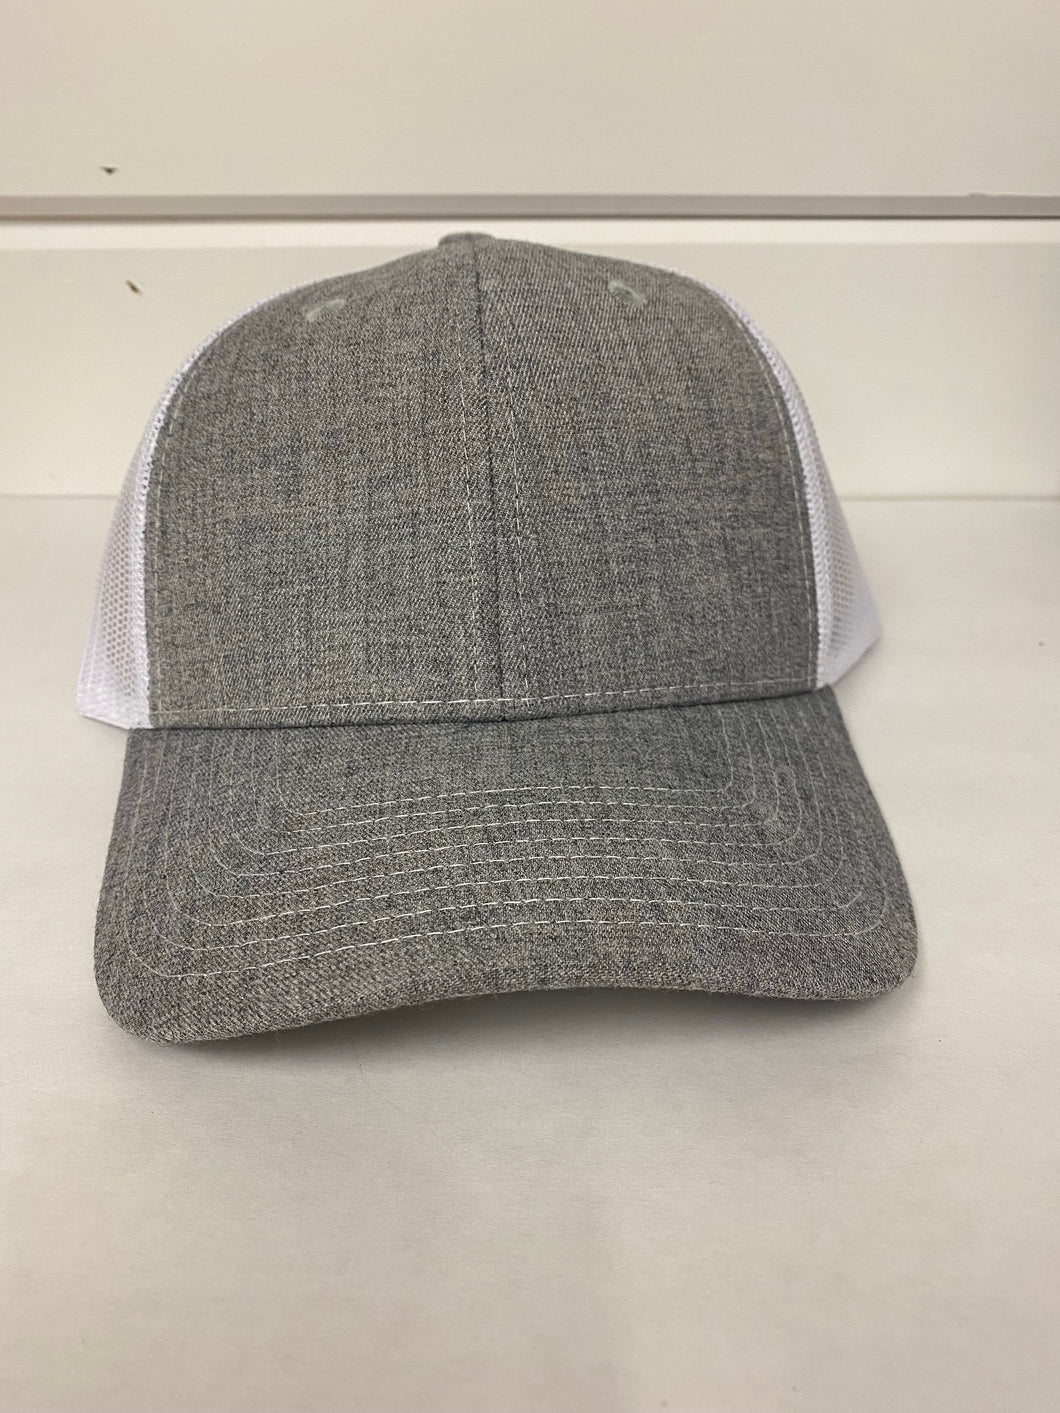 SnapBack Hats Adult (8 colors)